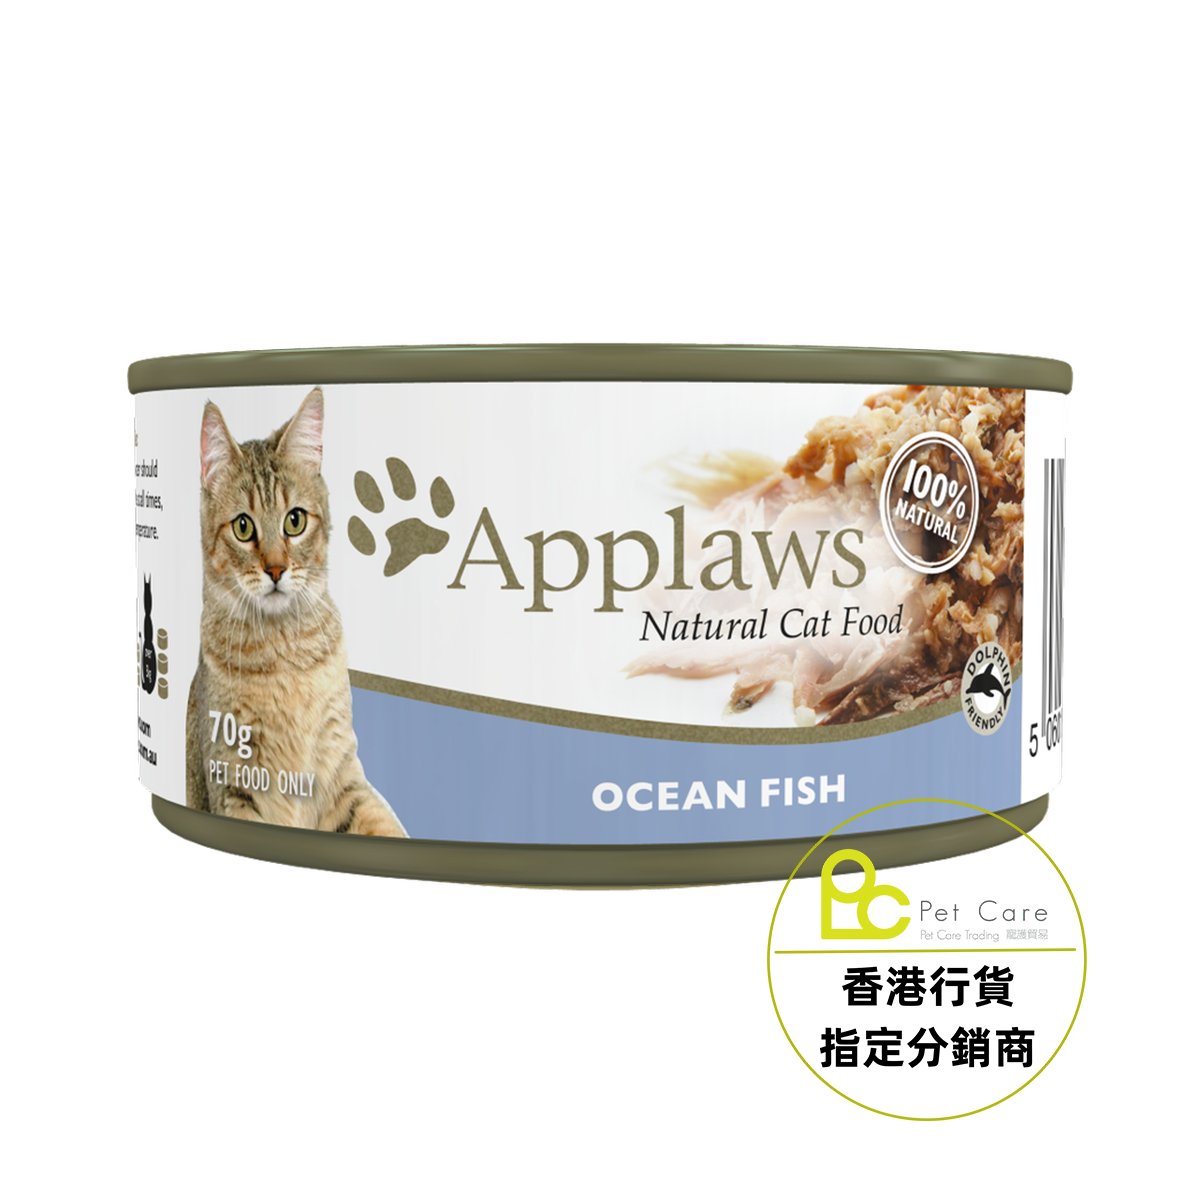 Applaws 全天然 貓罐頭 - 海魚 70g (細)